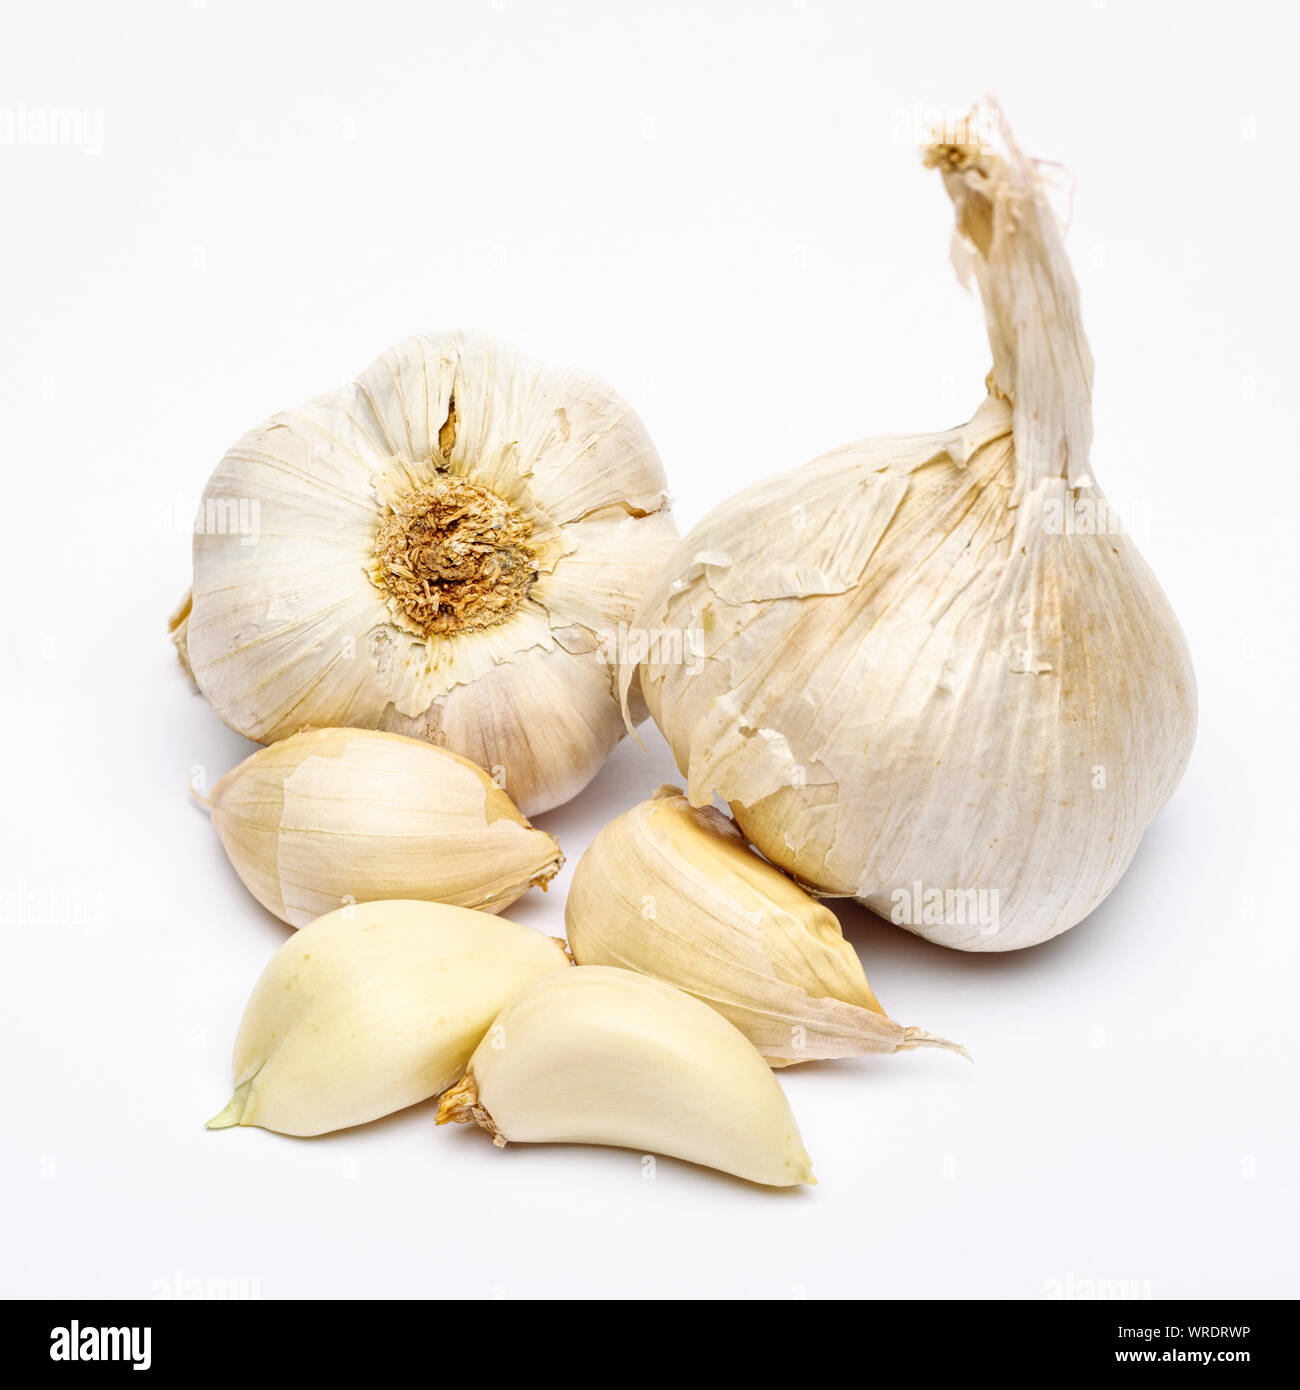 Bulbi di aglio e chiodi di garofano di aglio su sfondo bianco Foto Stock